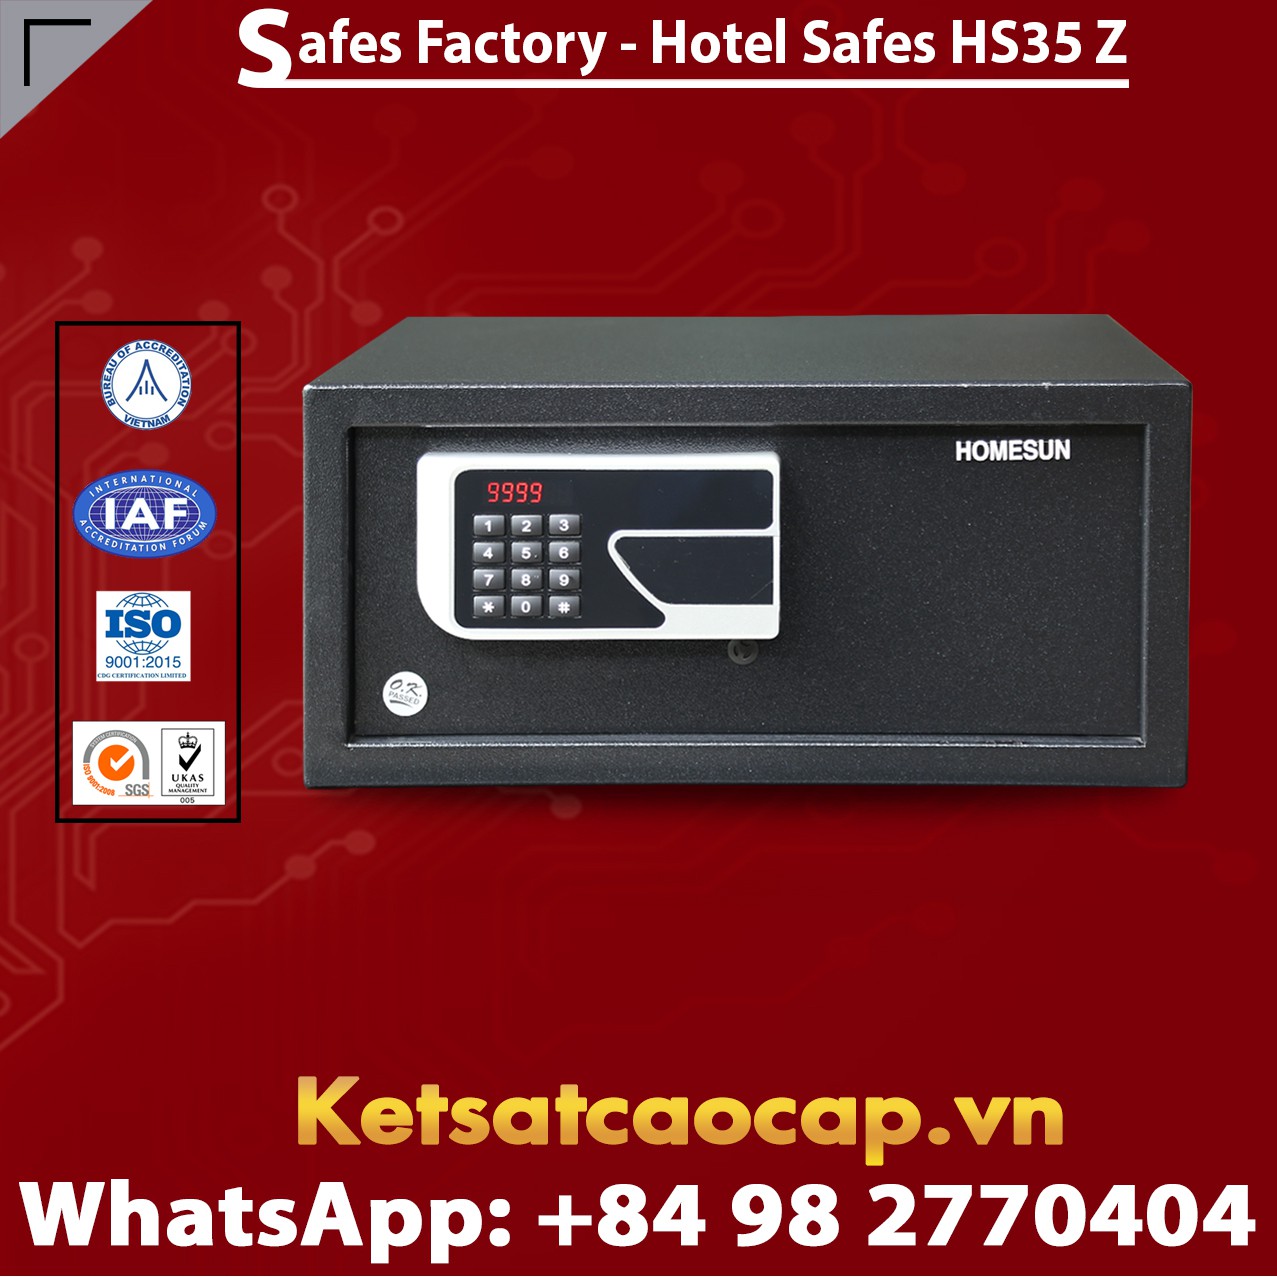 Safes in Hotel HOMESUN HS35 Z